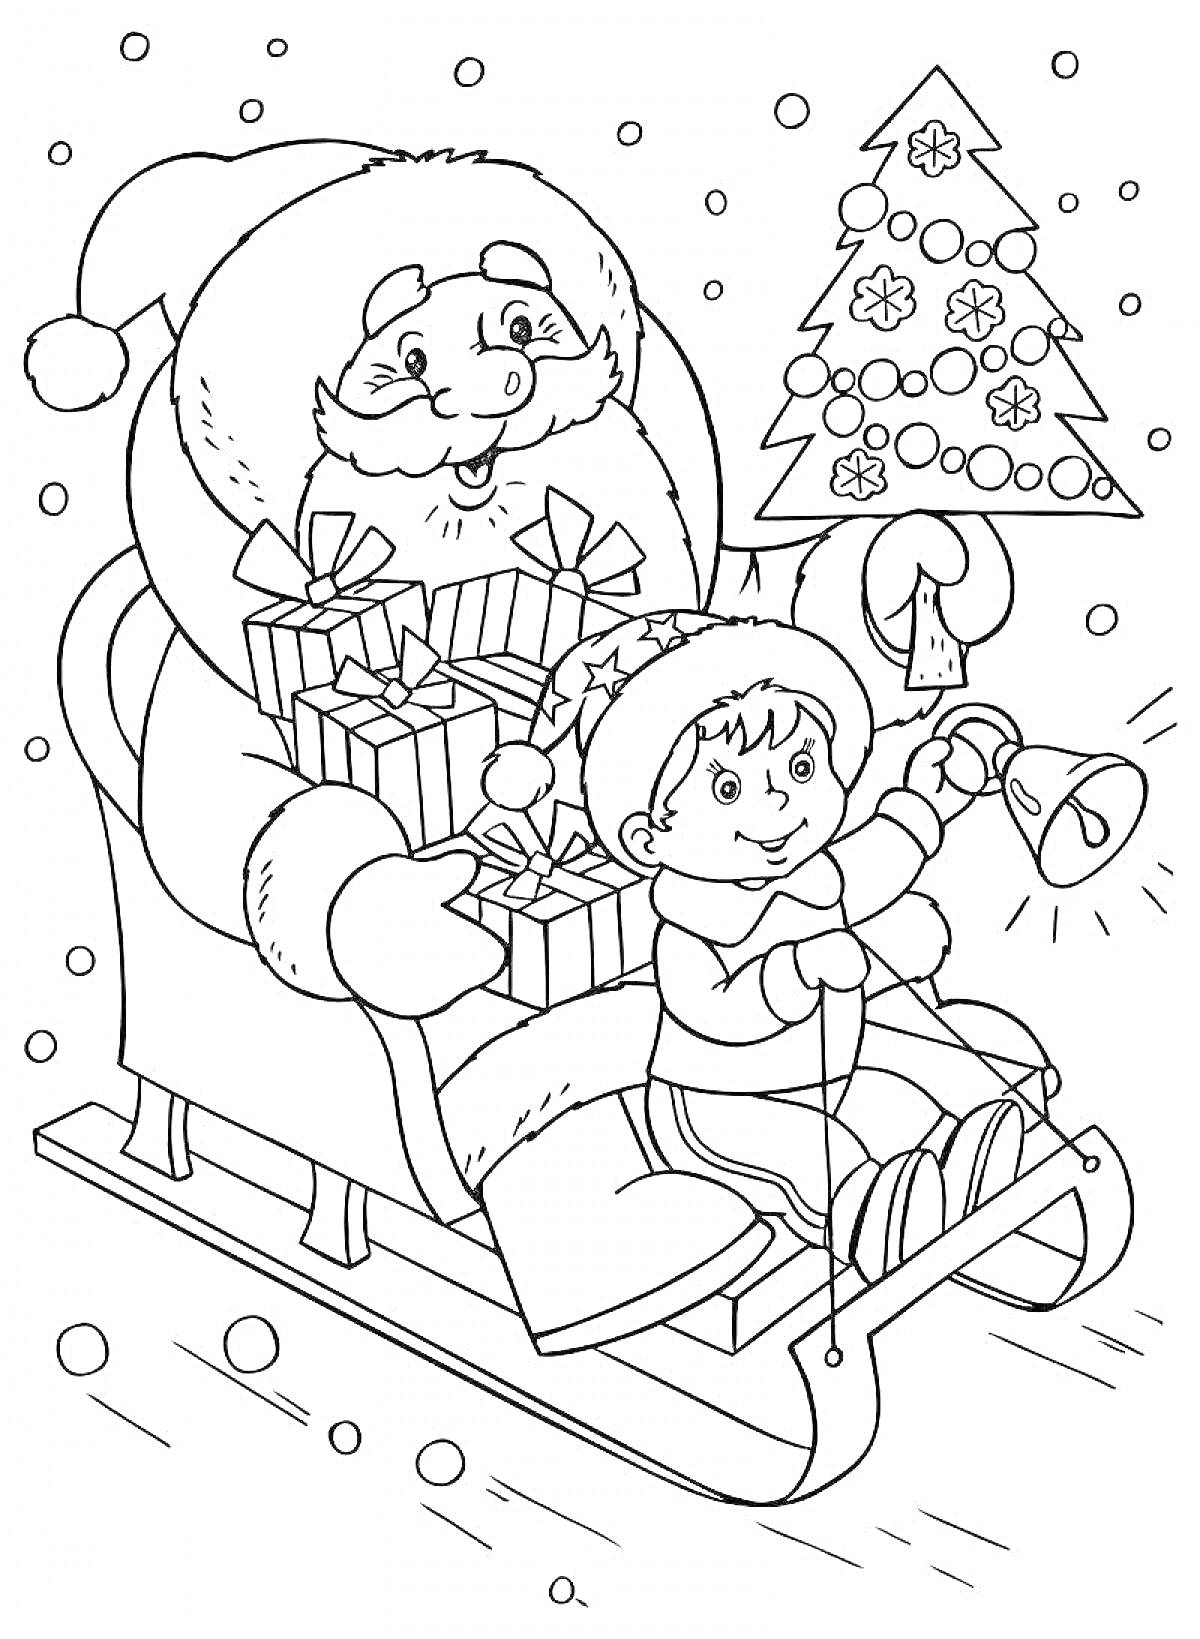 Раскраска Санта-Клаус и ребенок с подарками на санях, ребенок держит елочку и звонит в колокольчик, снег идет